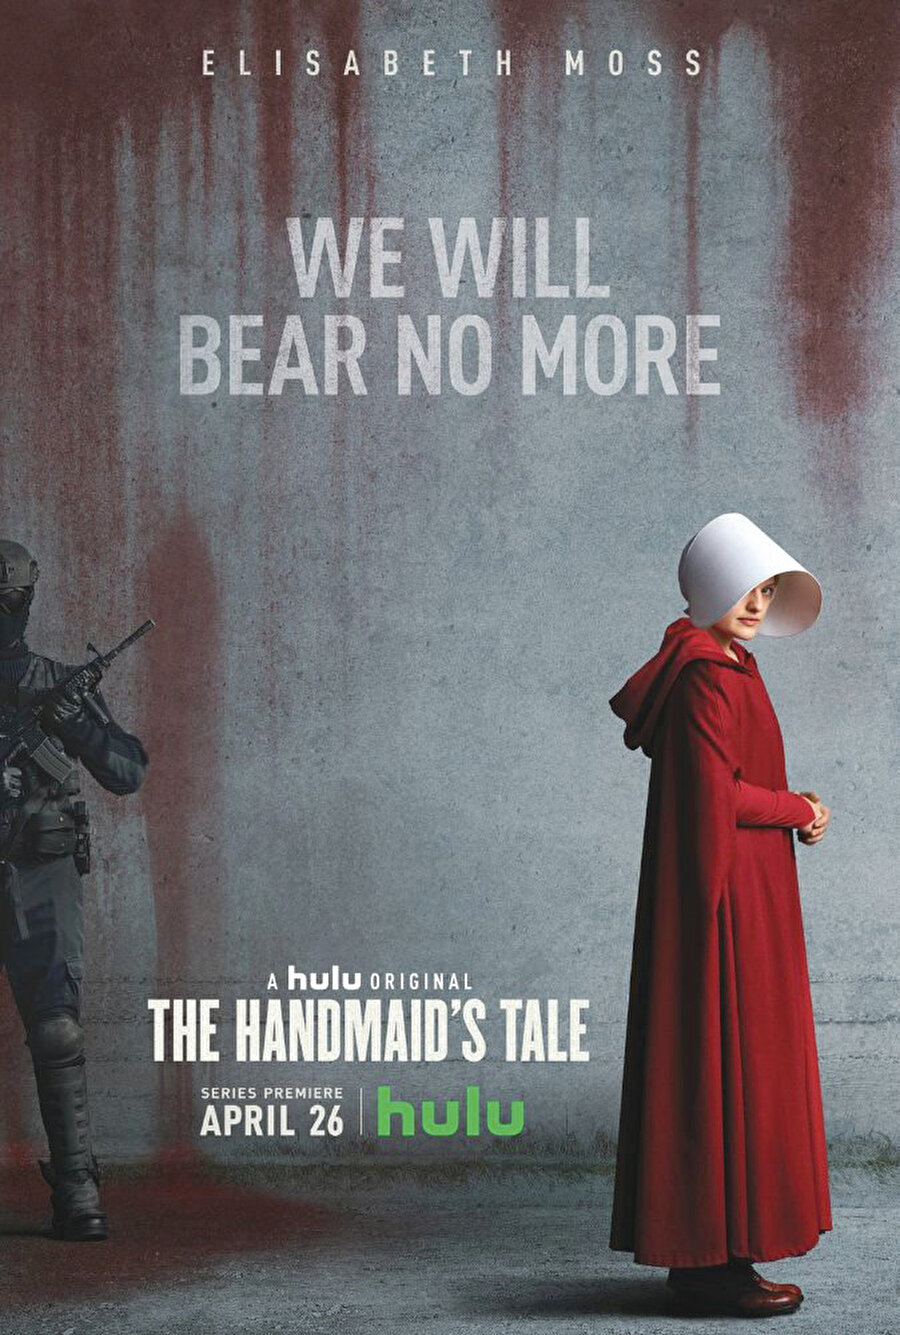 The Handmaid’s Tale, Kanadalı yazar Margaret Atwood’un 1985 tarihli aynı adlı romanından ekrana uyarlanan dizi, ABD’yi şiddet yoluyla ele geçiren ve ismini Gilead olarak değiştiren köktenci-Hıristiyan gizli bir örgütün faşist ve totaliter yönetiminde köleye dönüşen kadınların dramını ekrana yansıtıyor. Distopik kurgunun en iyi örnekleri arasında yer alan dizi, 2017’nin 10 Emmy ödüllü en iyi dizisi. 